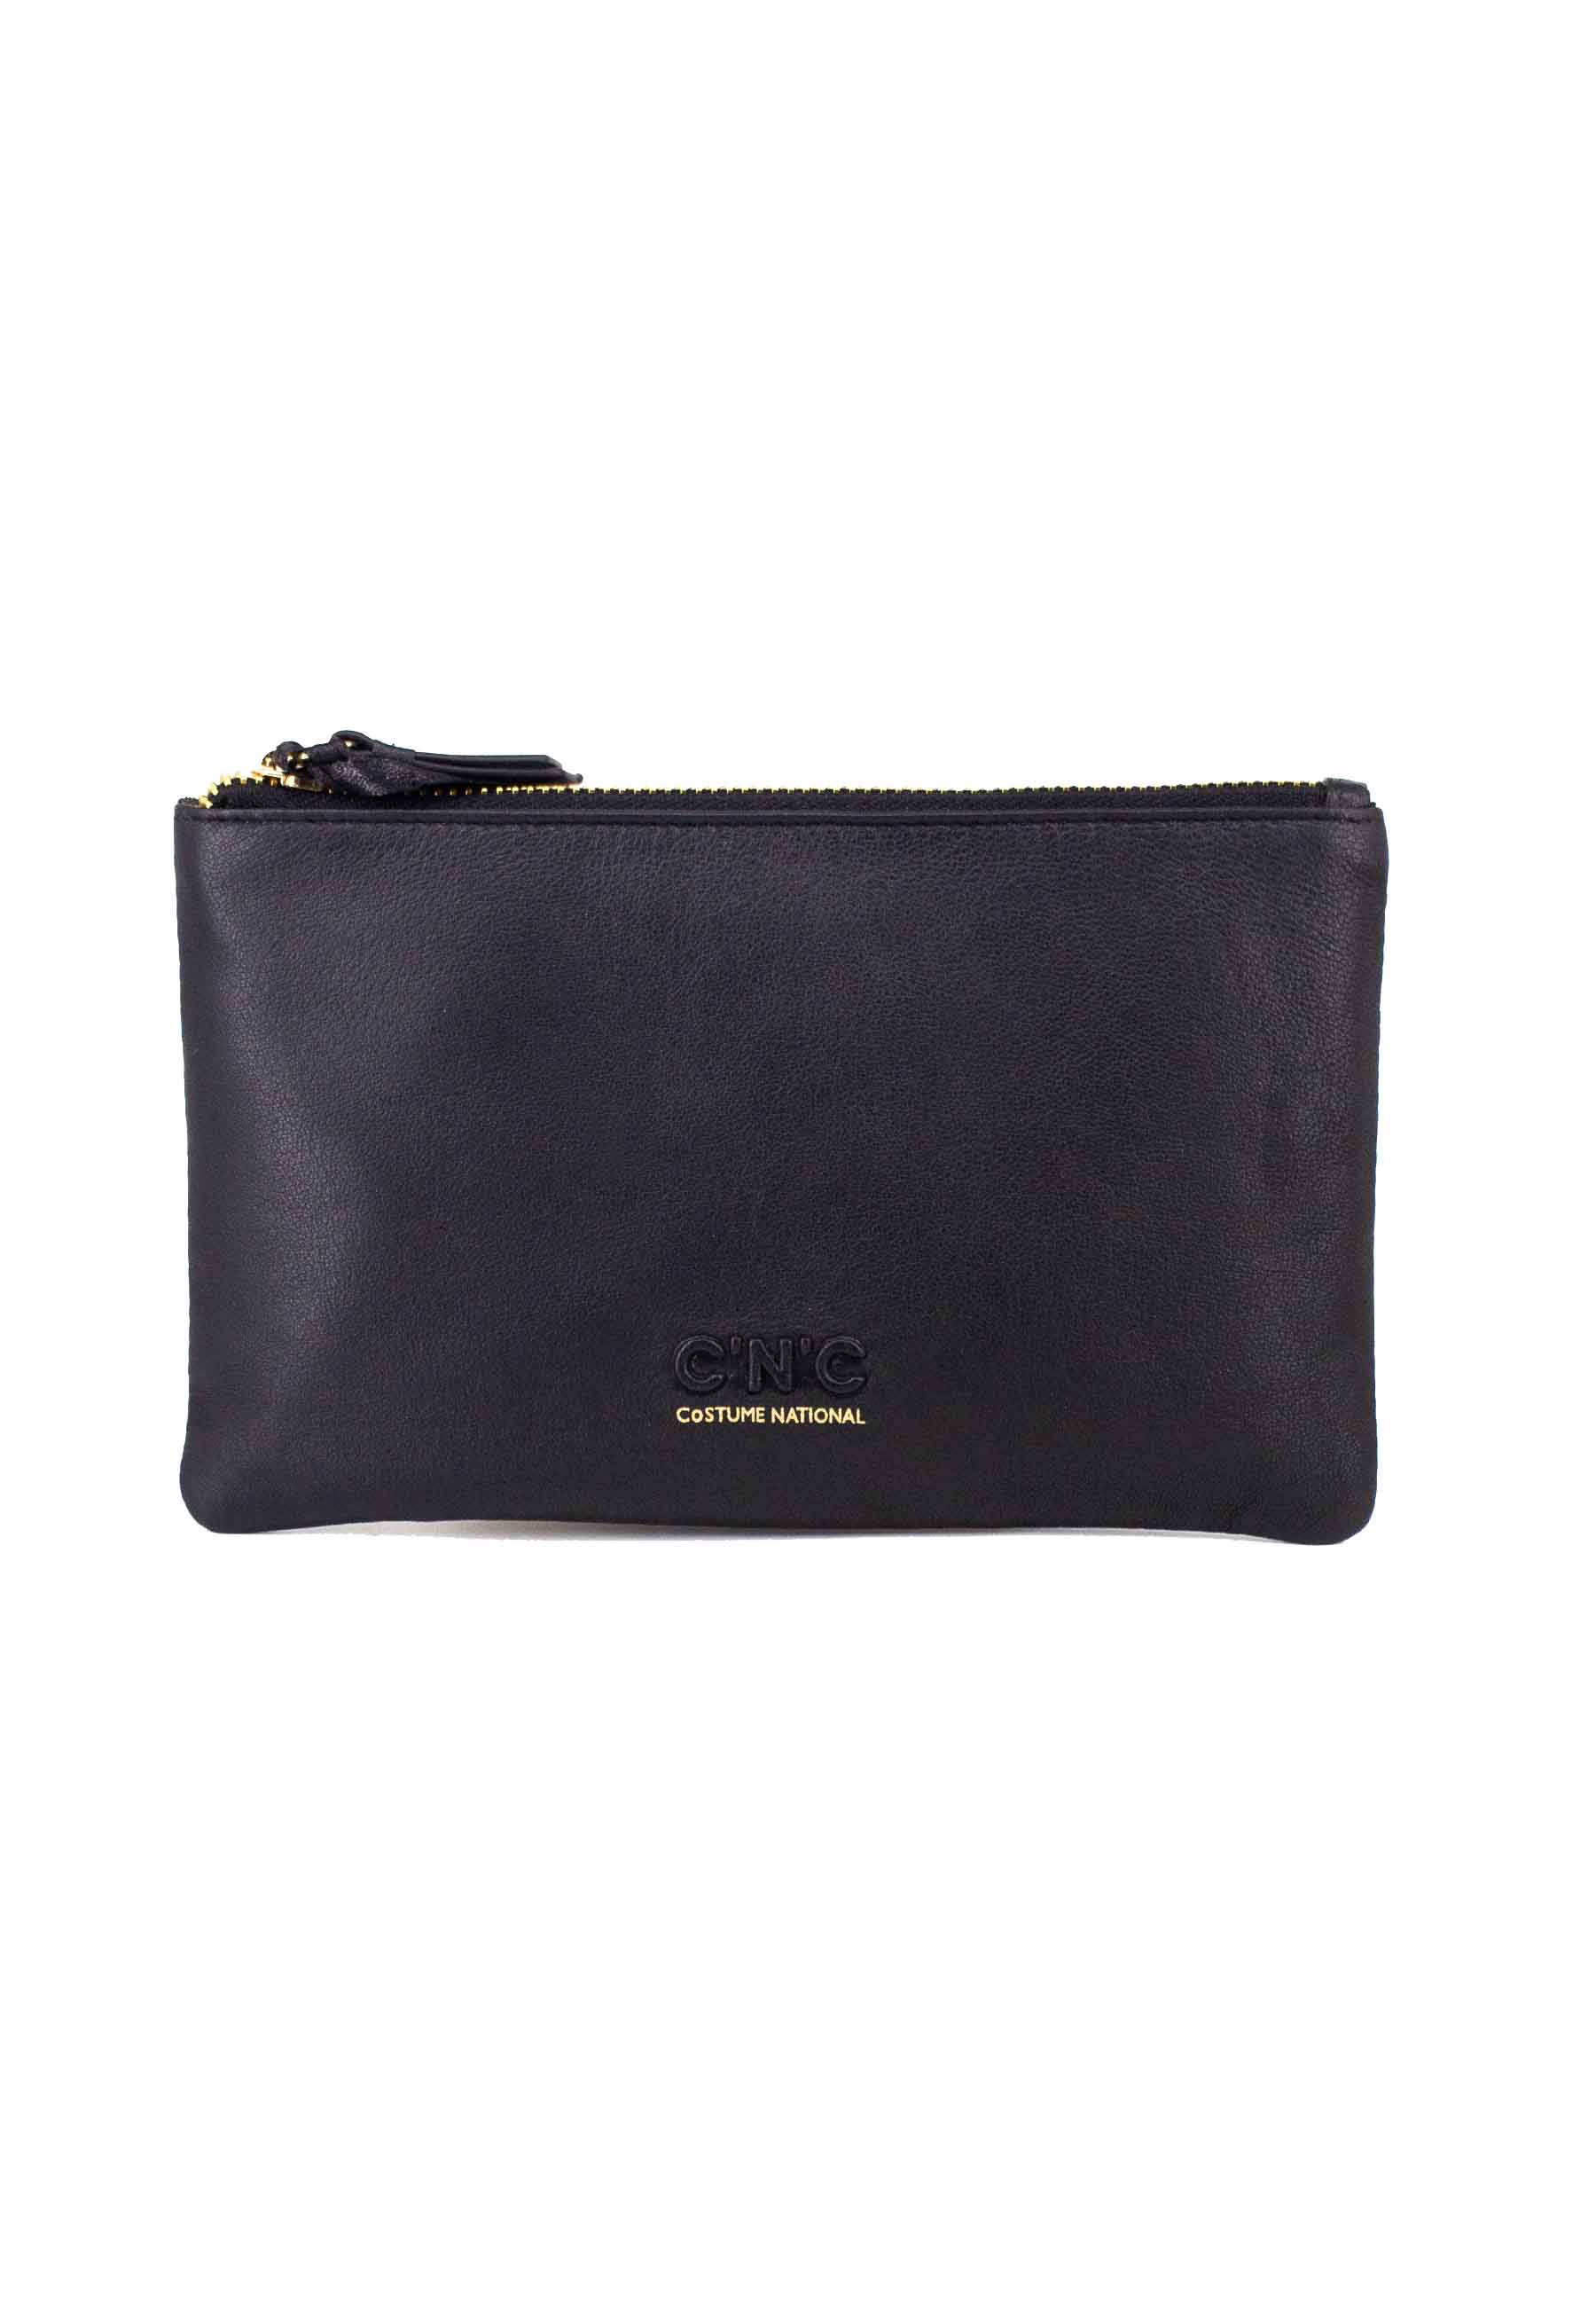 Men's zip wallet in black leather